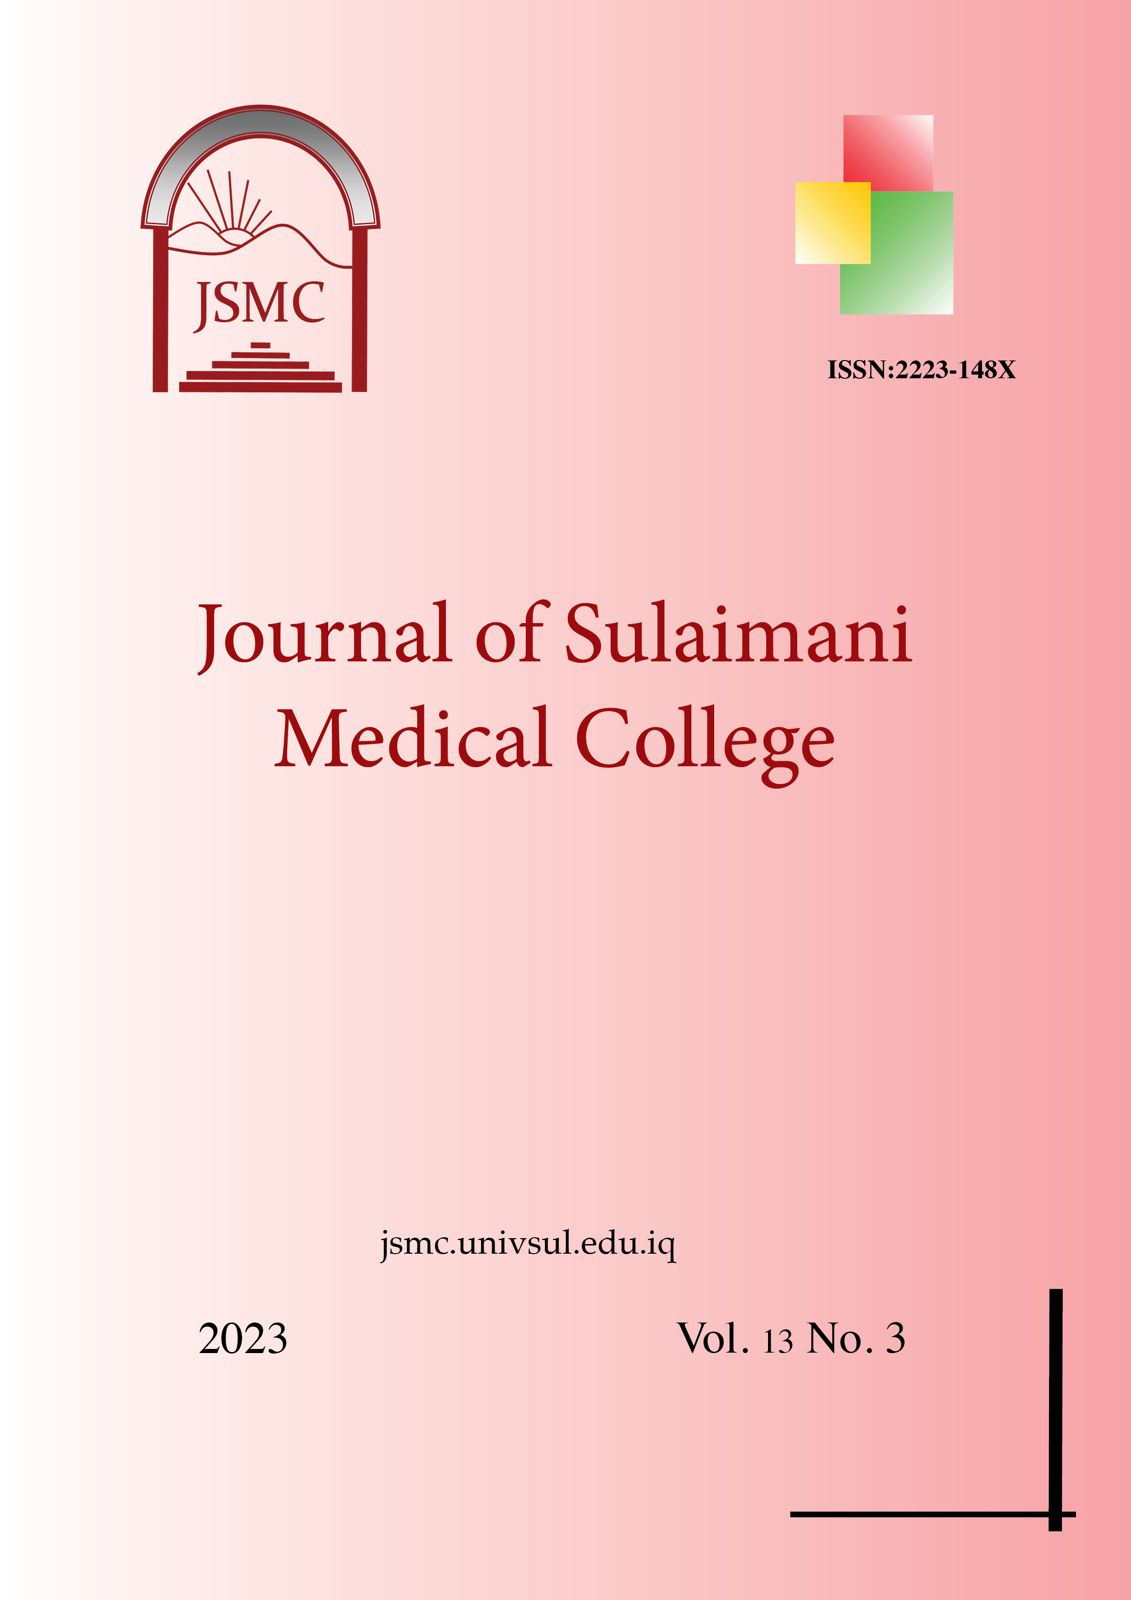 JSMC-vol13-no3-2023-Cover-Image